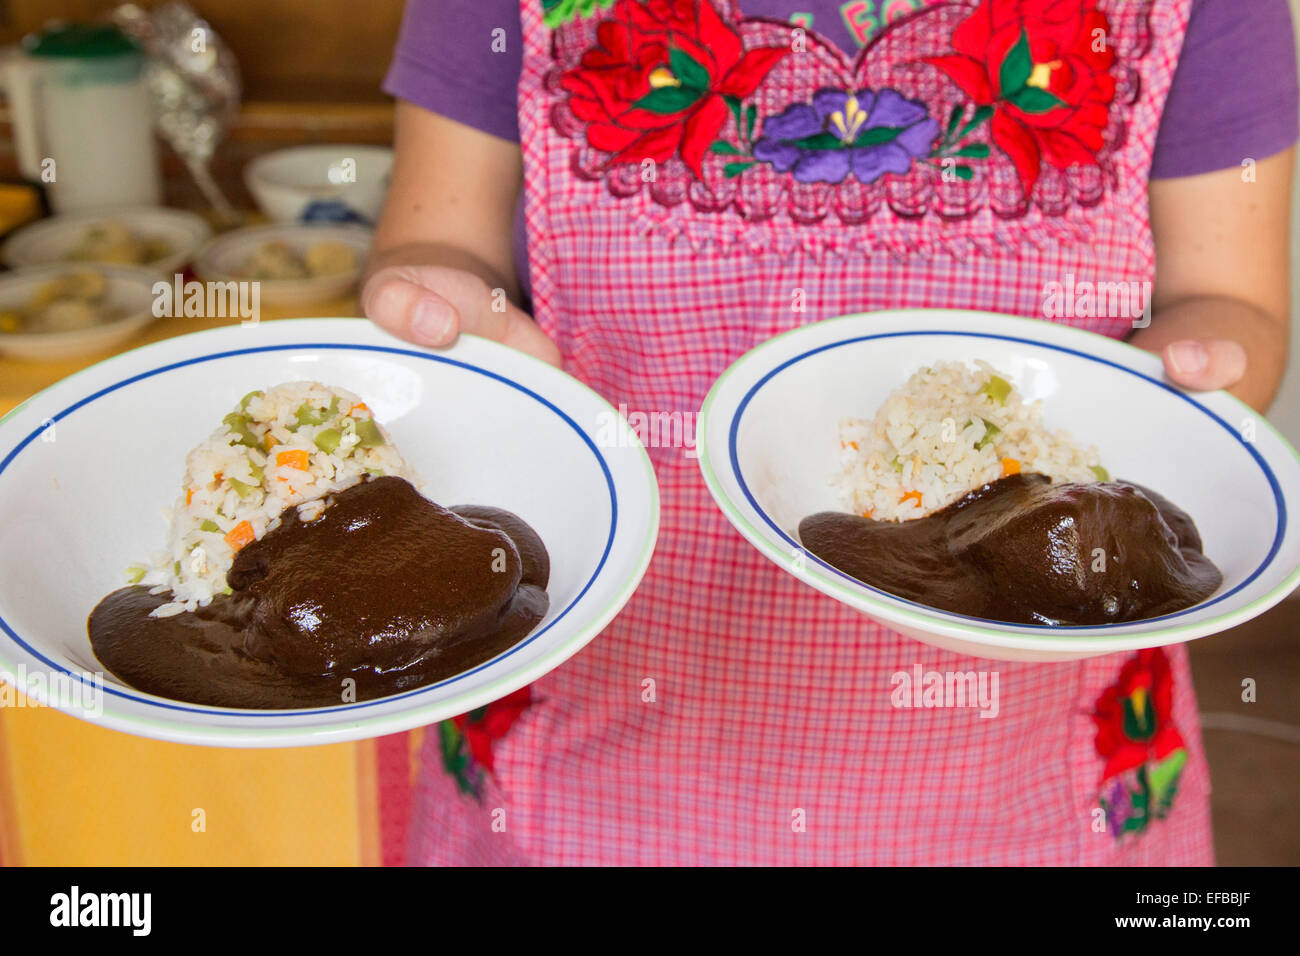 Oaxaca, México - Mole Negro con pollo y arroz blanco estilo mexicano, el producto acabado de estudiantes en una clase de cocina. Foto de stock